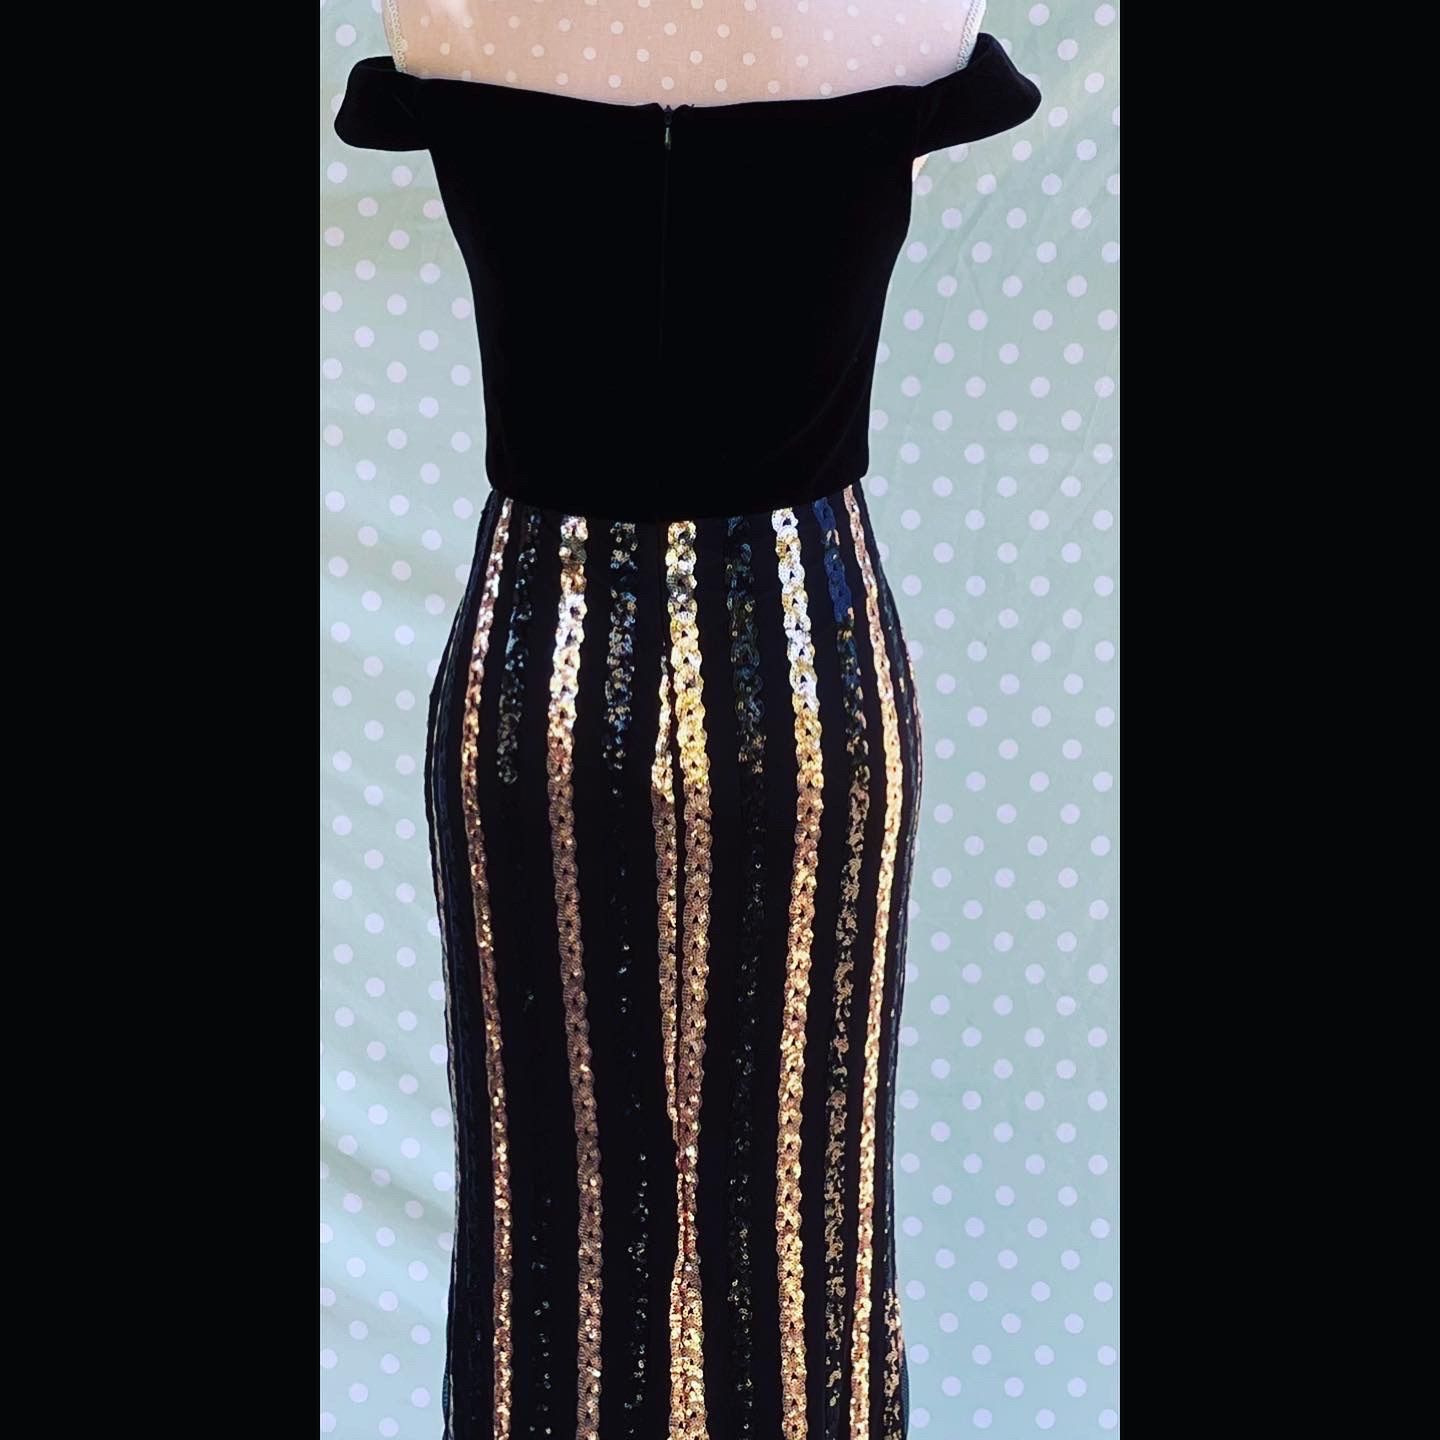 Size 4 Velvet Rose Gold Mermaid Dress on Queenly